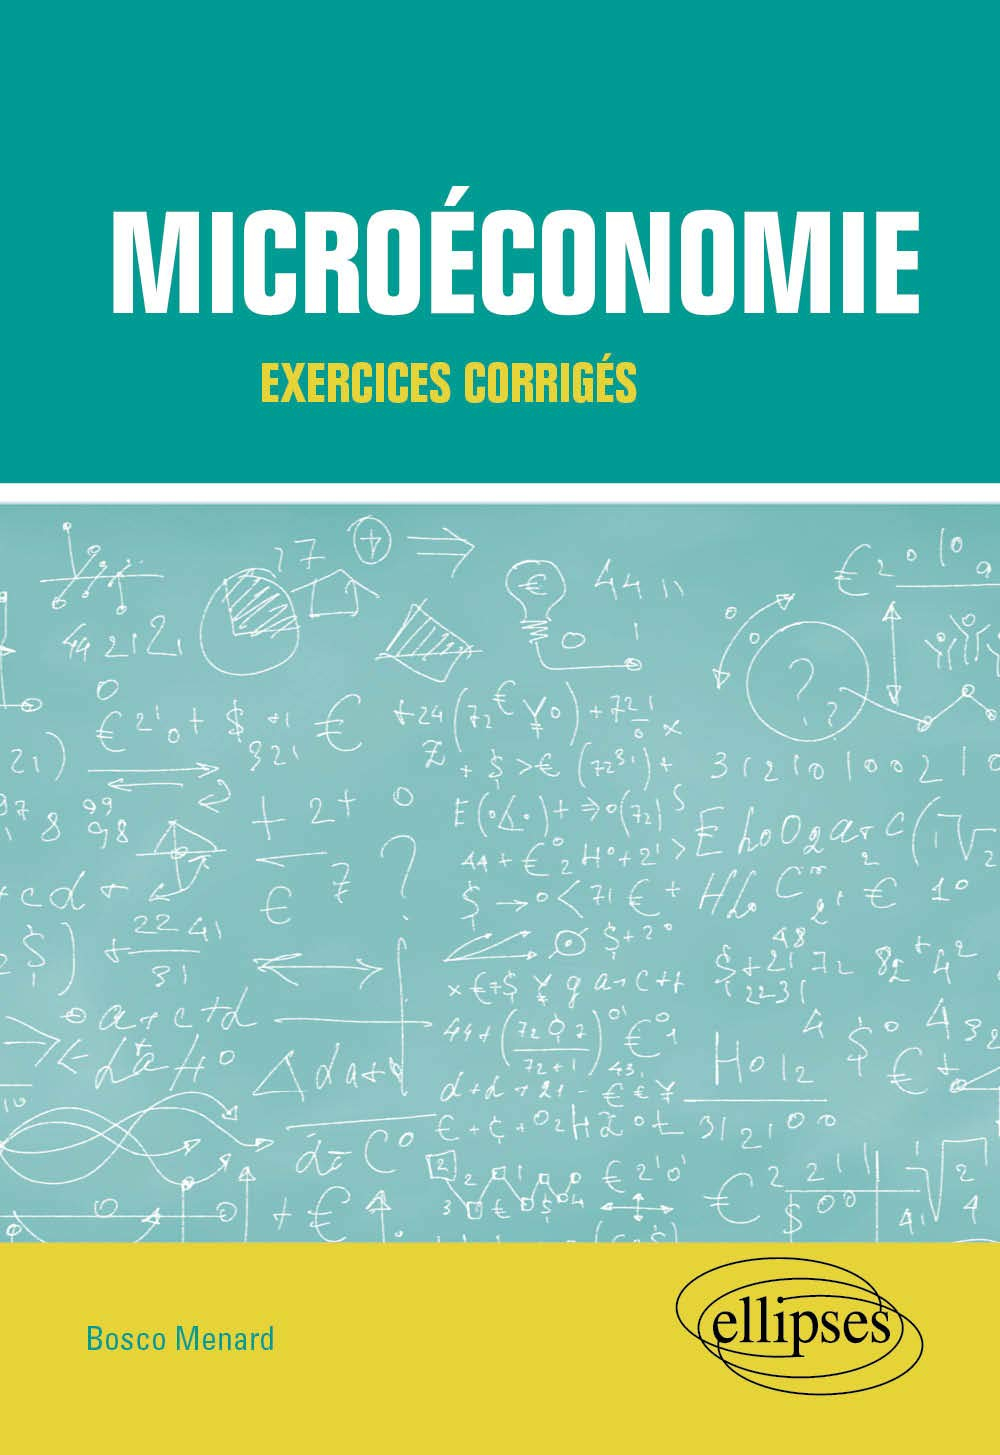 Microéconomie : exercices corrigés